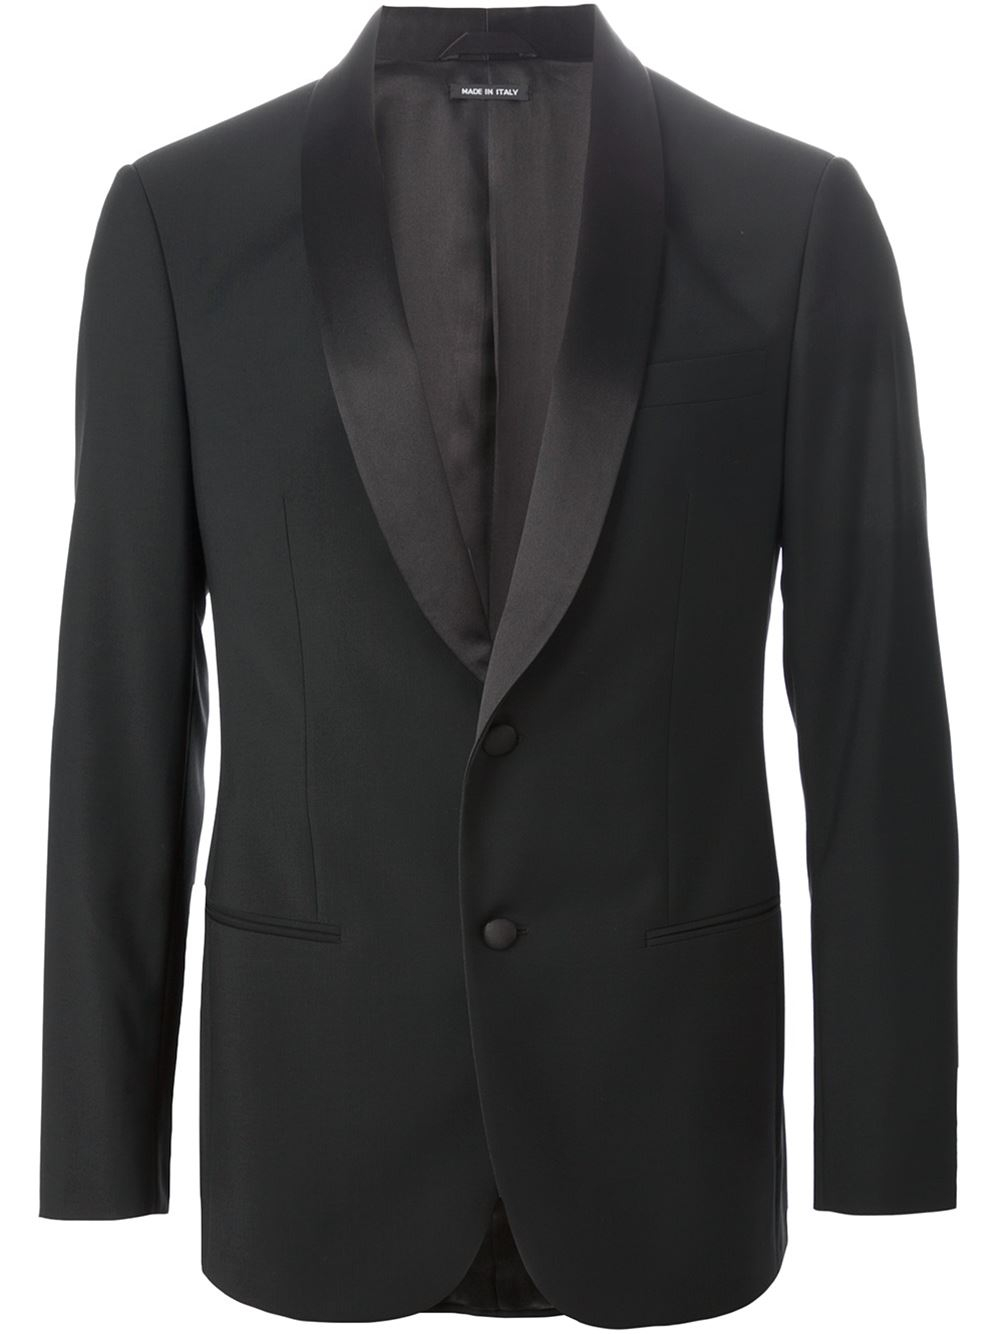 Lyst - Giorgio Armani Classic Tuxedo in Black for Men